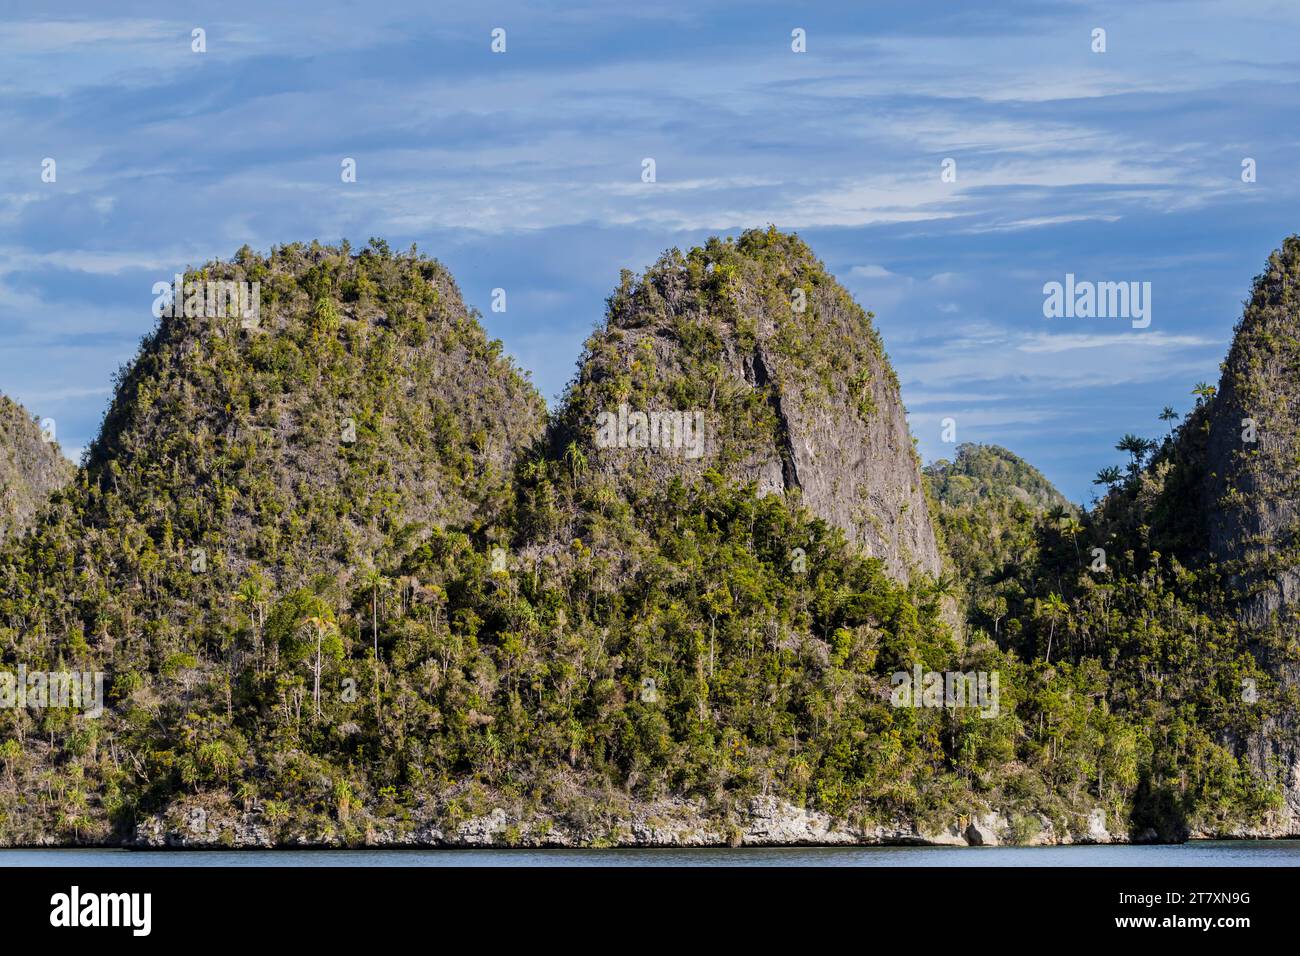 Vista delle isolette ricoperte di vegetazione dall'interno del porto naturale protetto di Wayag Bay, Raja Ampat, Indonesia, Sud-Est asiatico, Asia Foto Stock